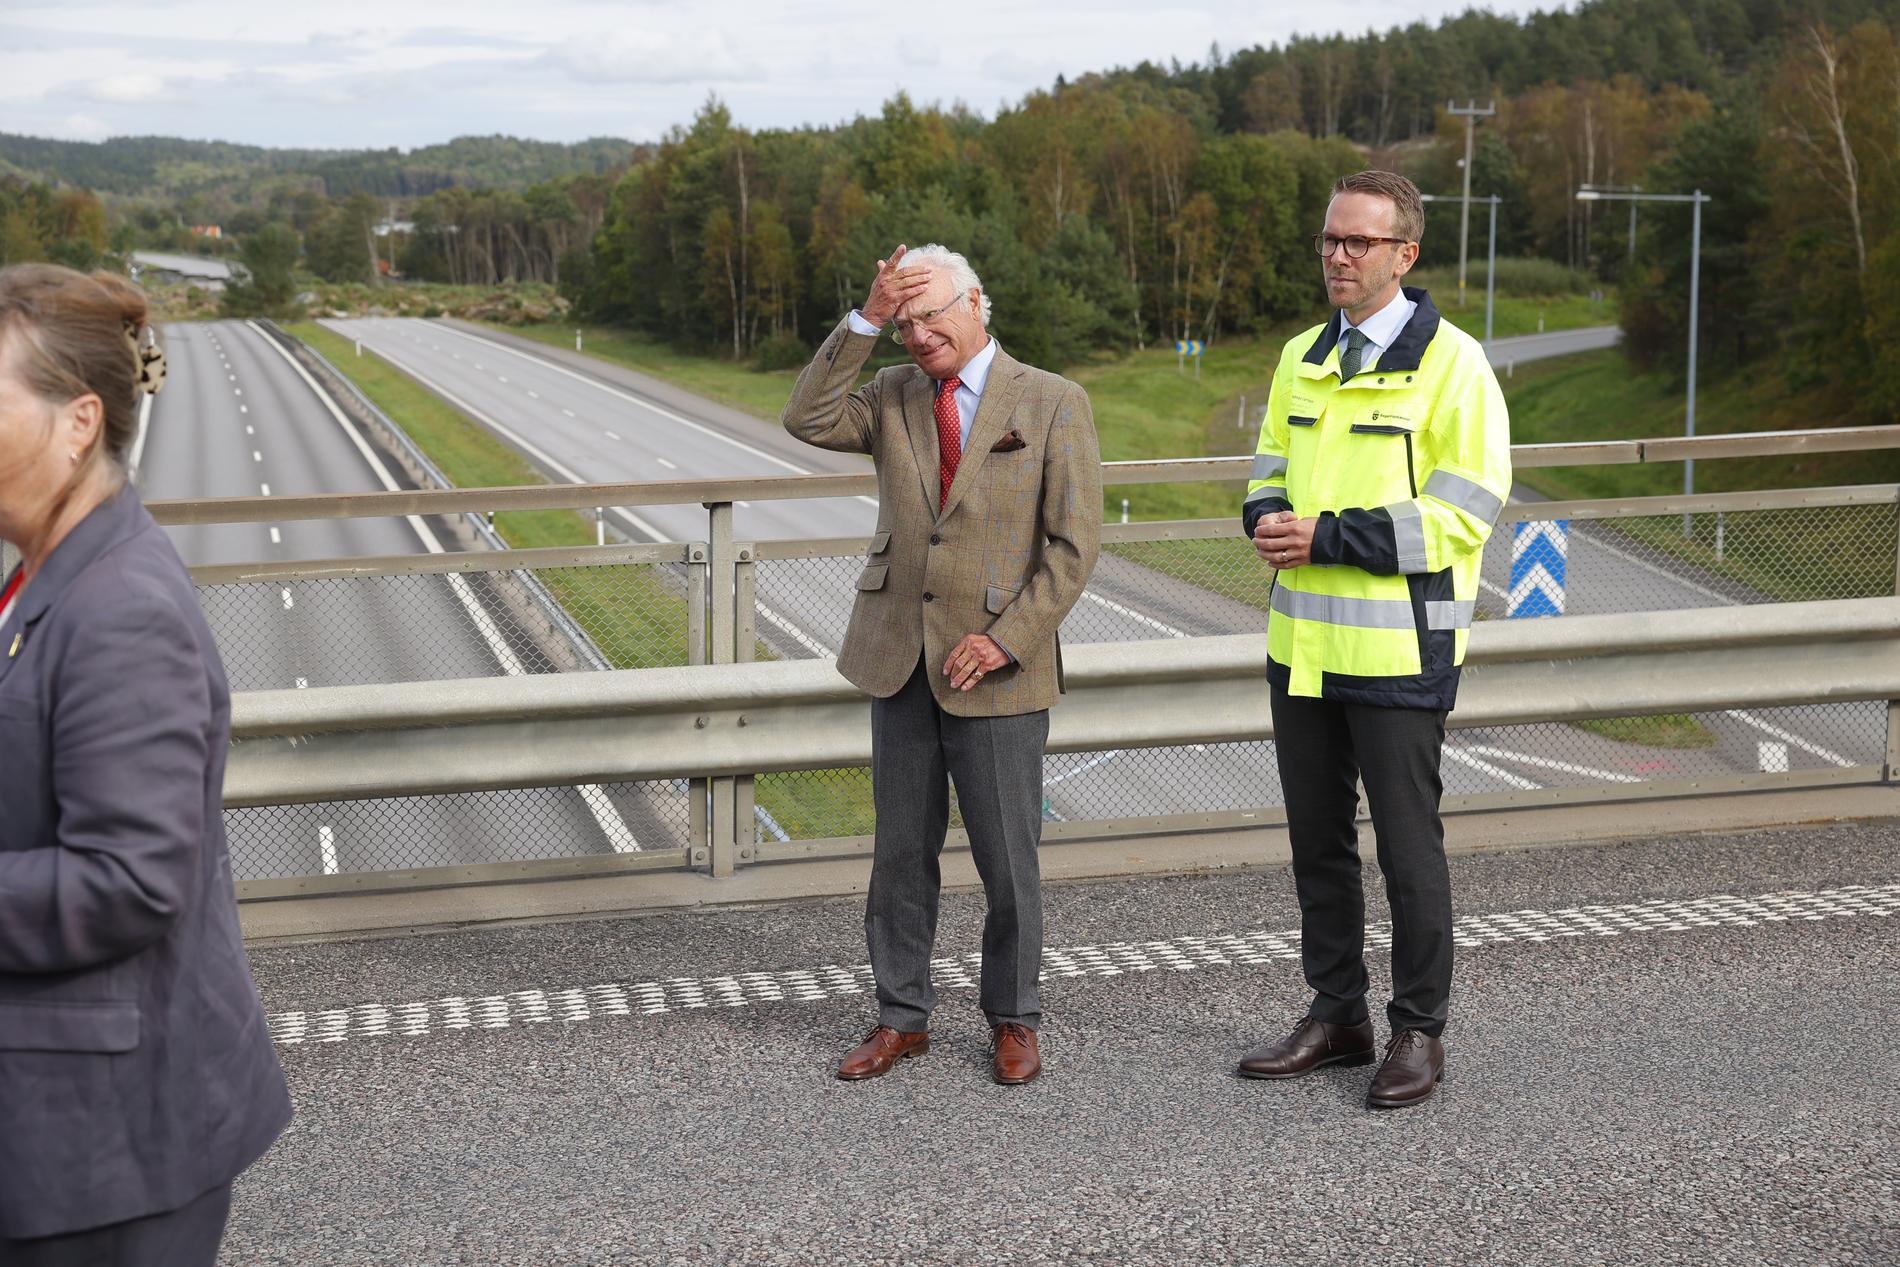  ”Jag är glad att ingen omkom”, säger Kung Carl XVI Gustaf som besökte Stenungsund tillsammans med bland annat infrastrukturminister Andreas Carlsson.